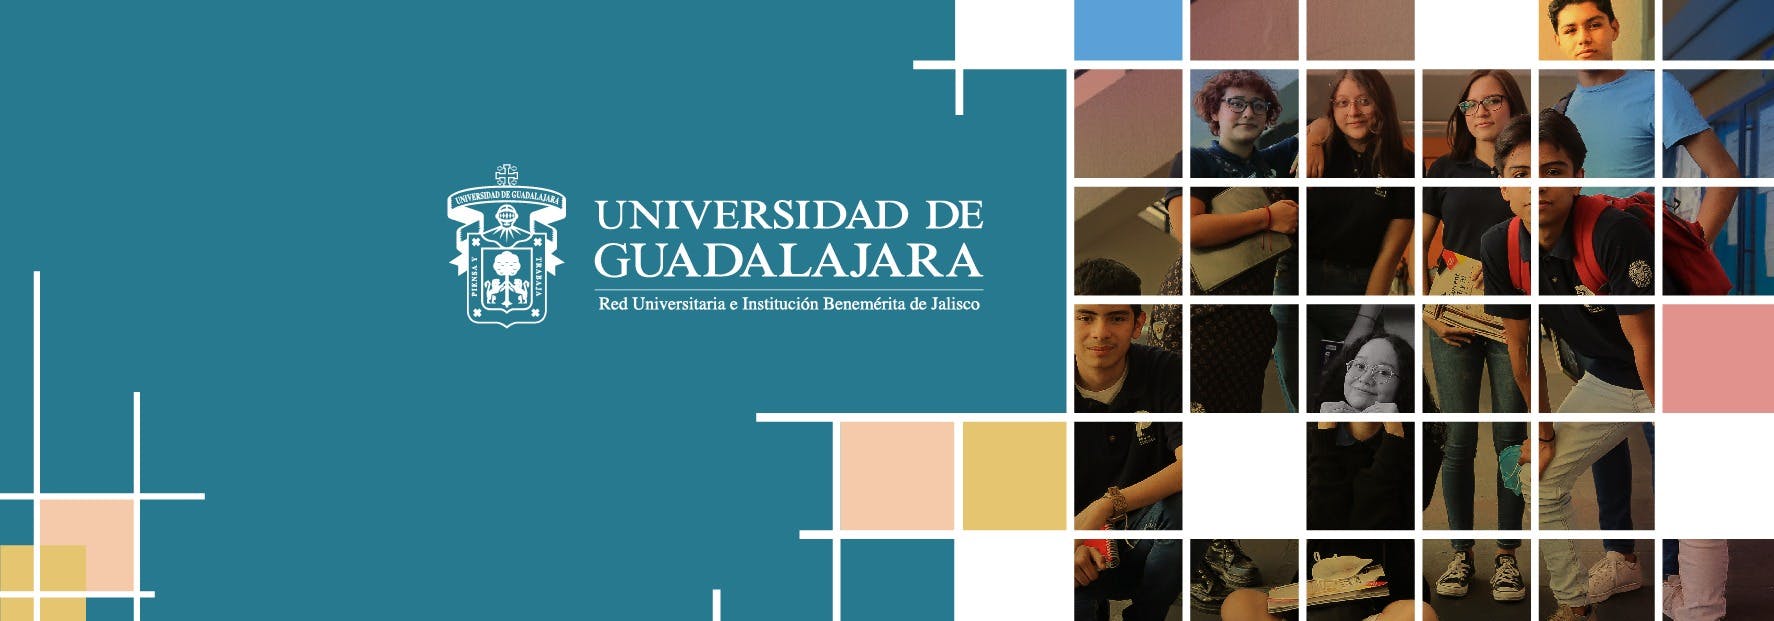 Universidad de Guadalajara (CUCEI)